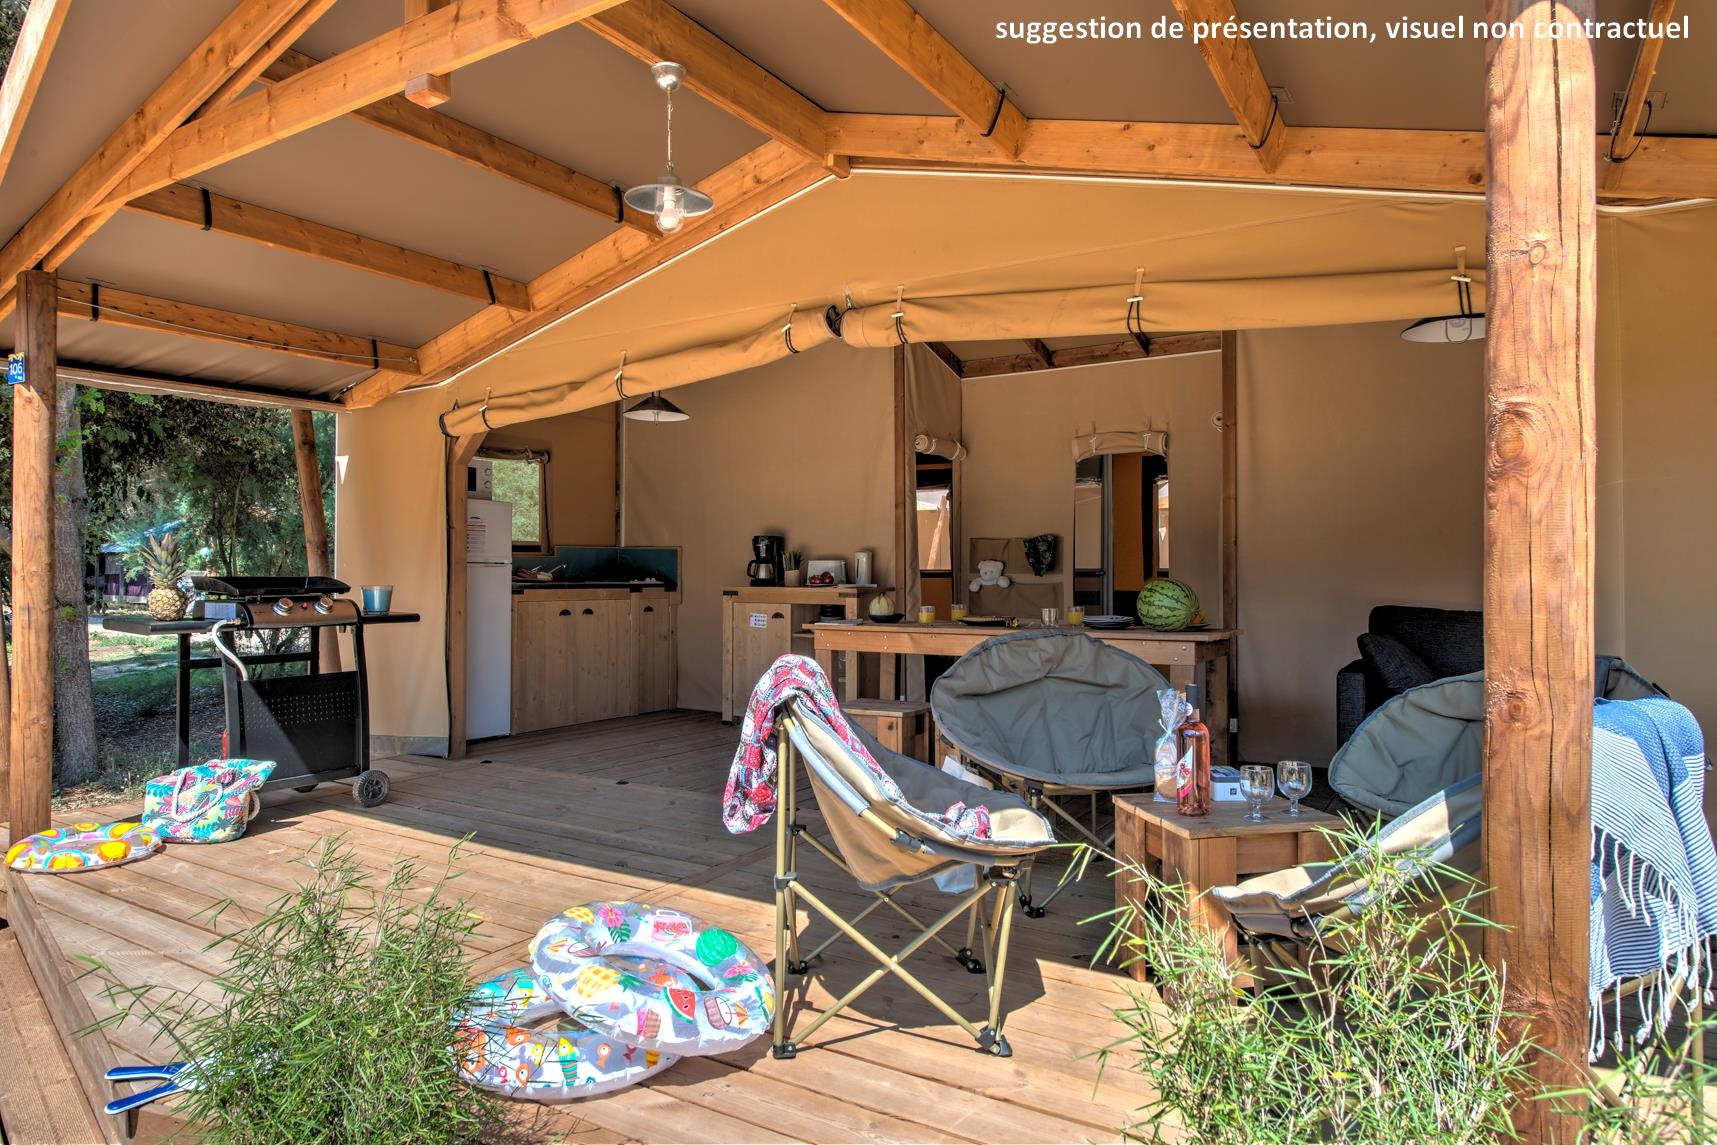 Location - Cabane Cotton Toilée Confort 32M² (2 Chambres) + Terrasse Couverte 11M² + Tv - Flower Camping Le Conleau